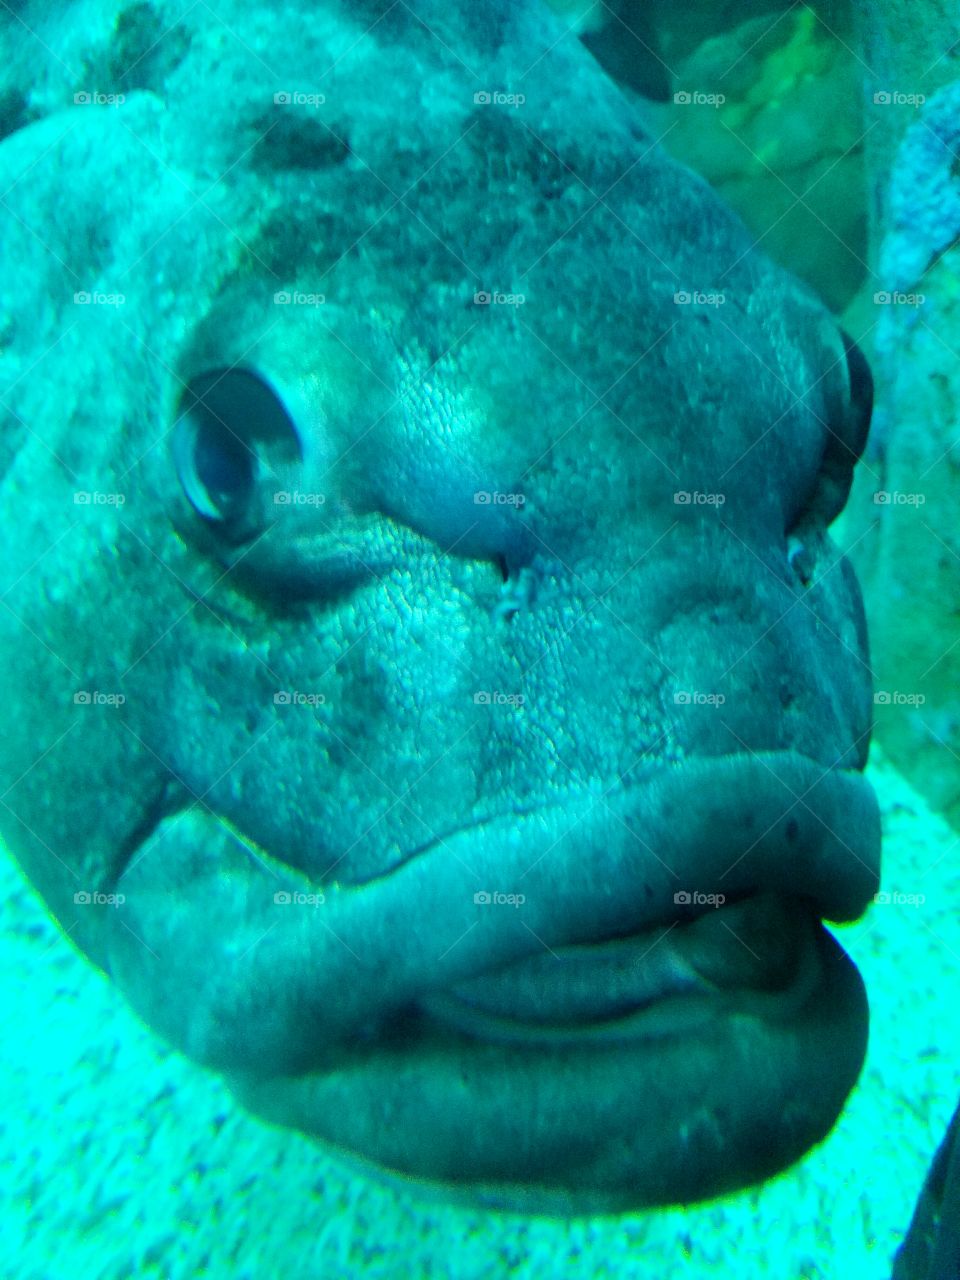 big mouth fish